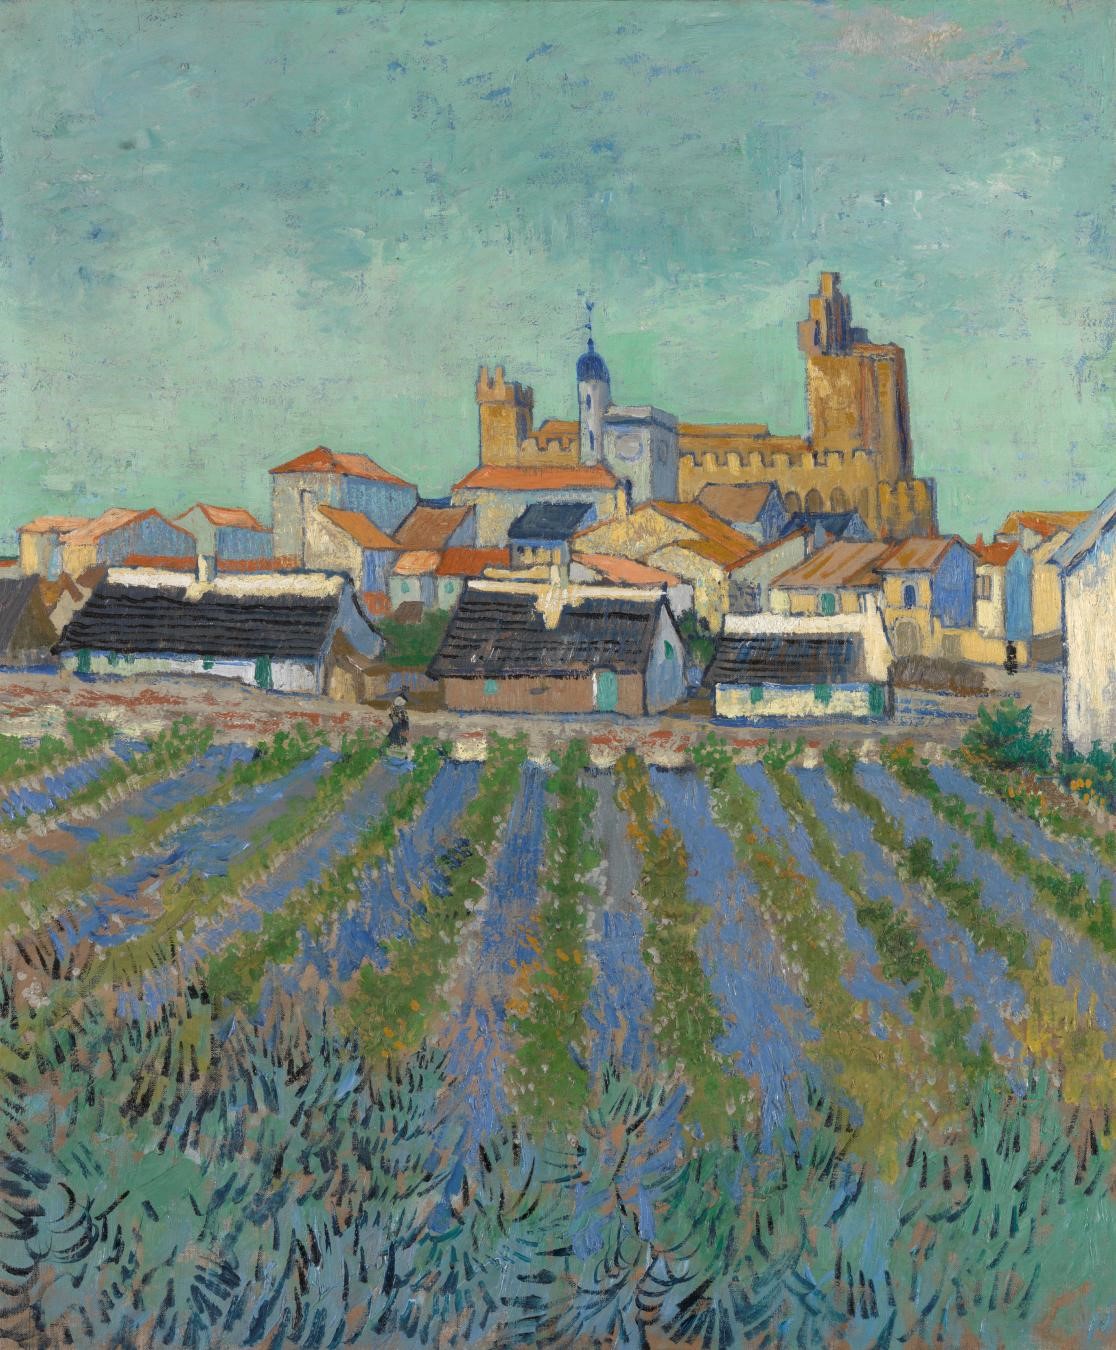 Vincent van Gogh, View of Saintes-Maries-de-la-Mer, June 1888, oil on canvas, Kröller-Müller Museum, Otterlo. © Kröller-Müller Museum